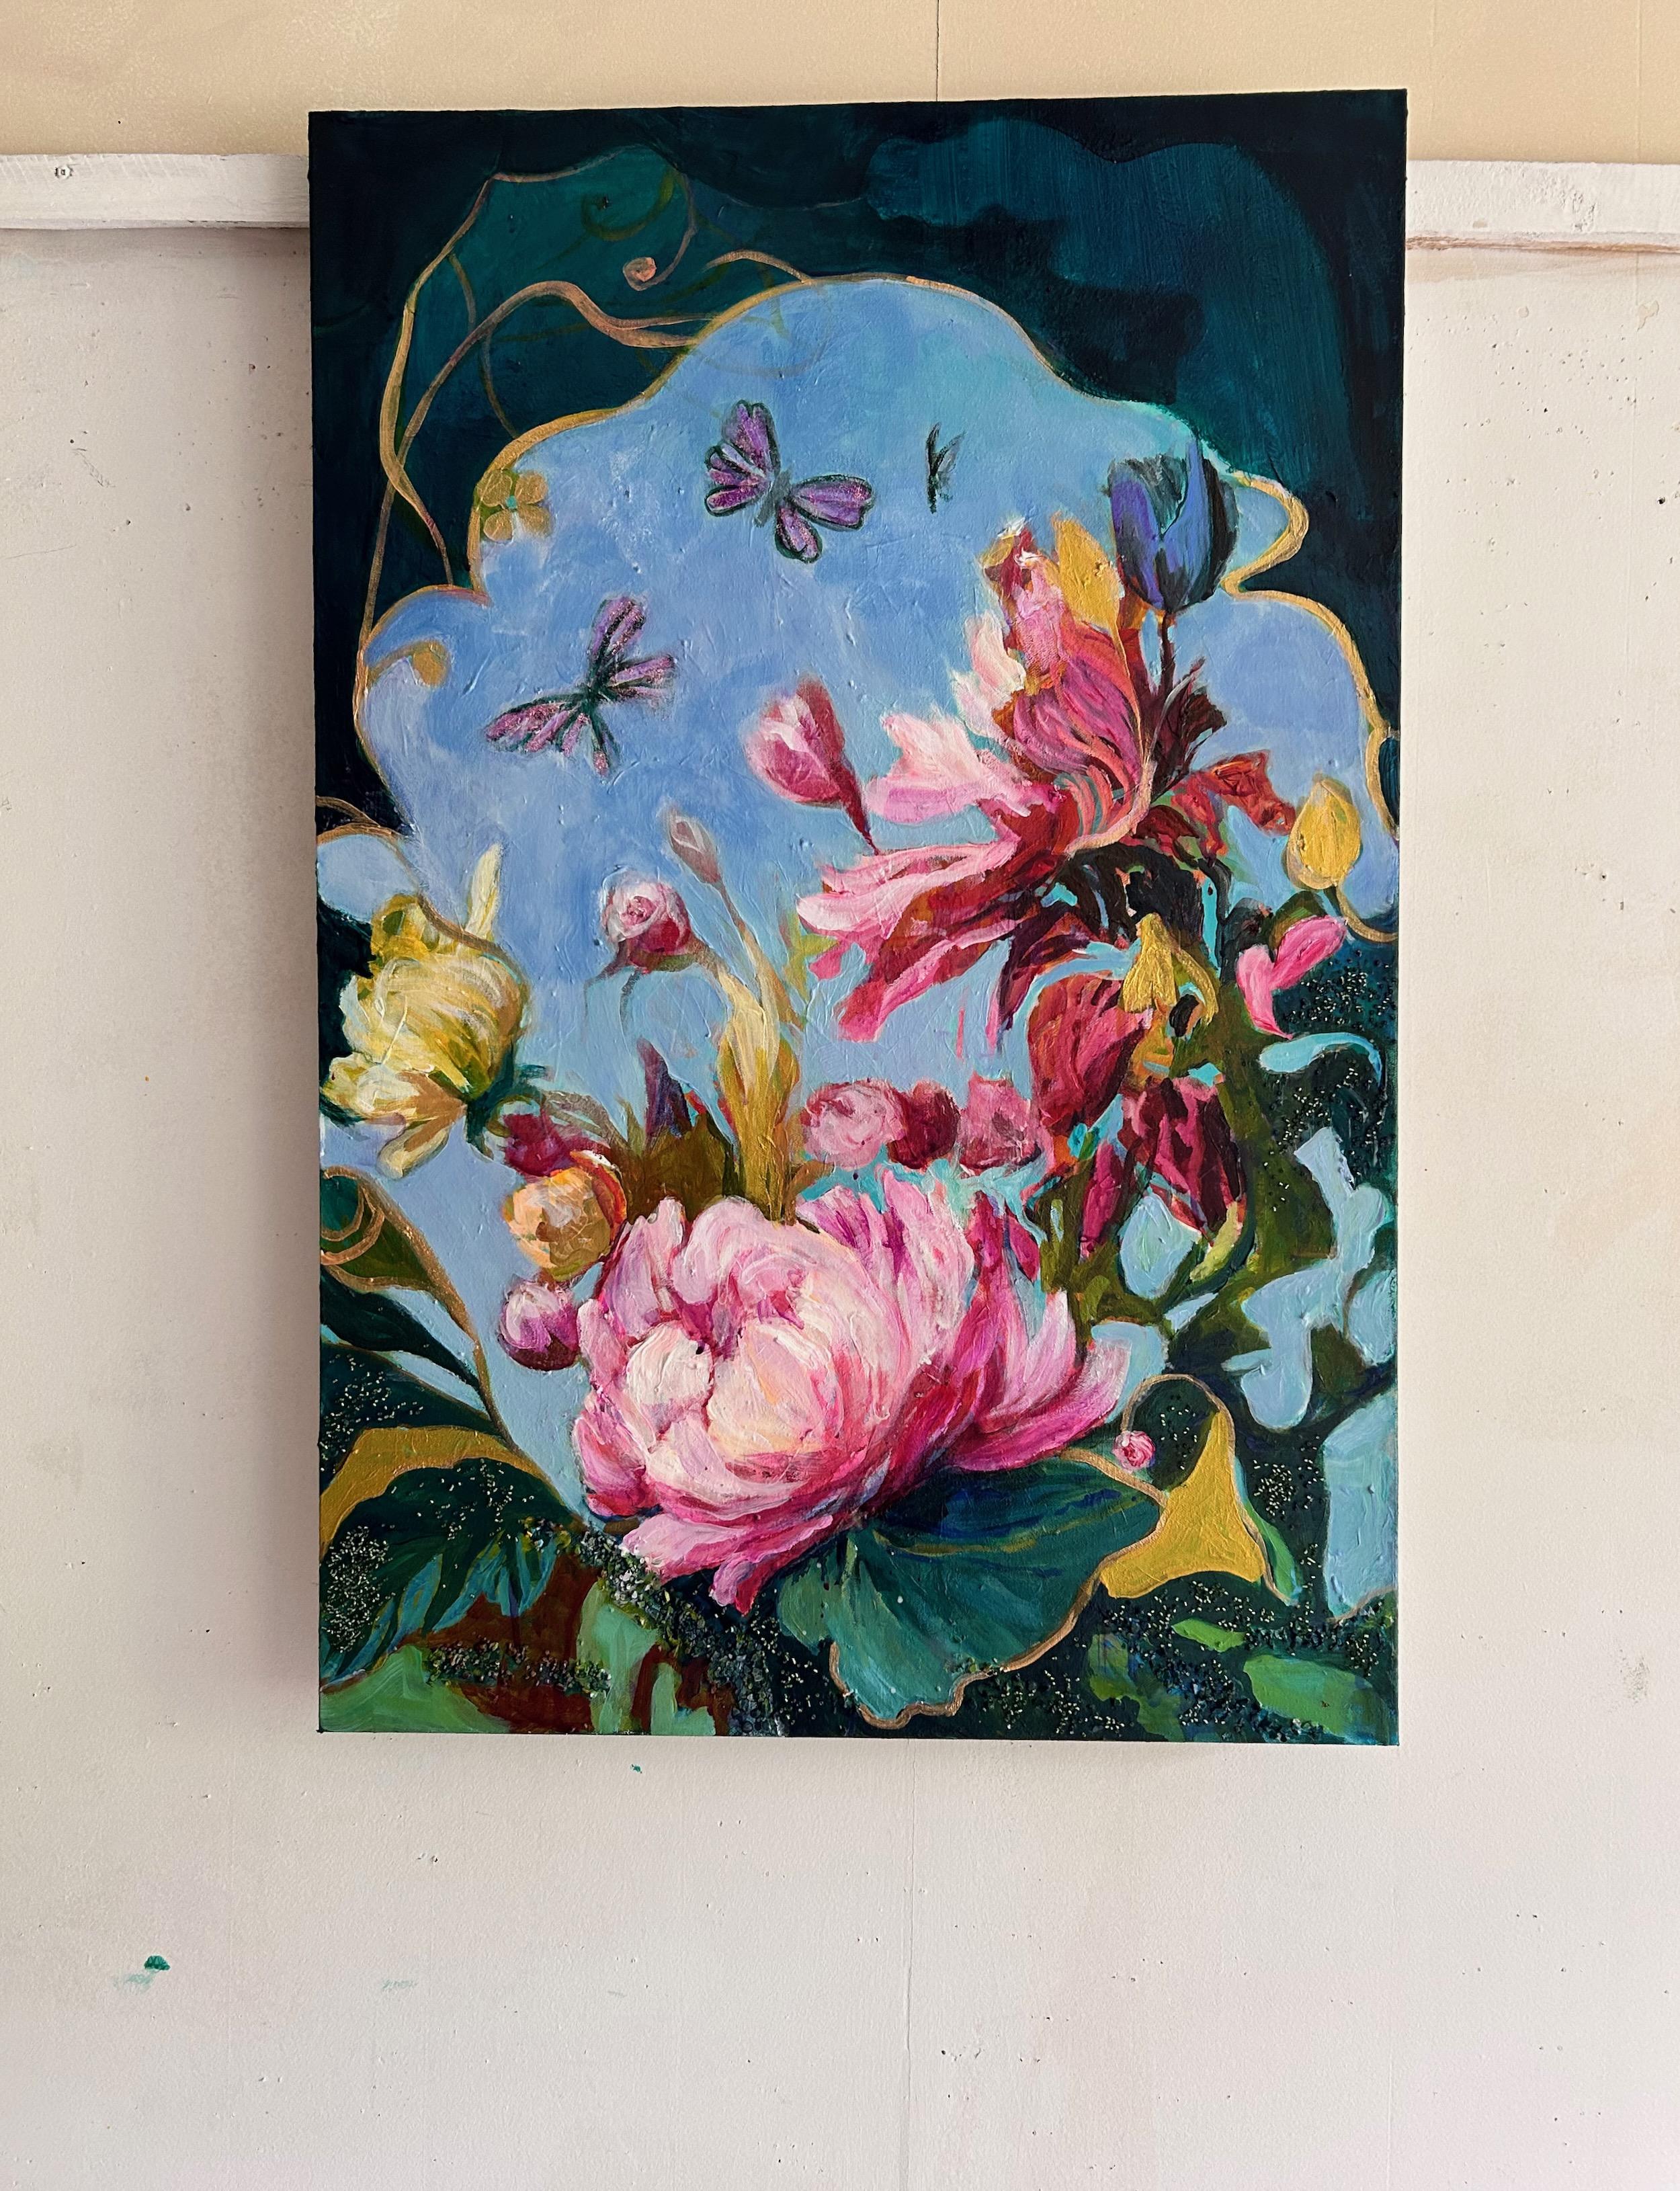 <p>Commentaires de l'artiste<br>L'artiste Julia Hacker crée une composition vibrante et vivante où des fleurs roses se balancent gracieusement au rythme d'une brise invisible. Les papillons volent dans le ciel bleu, attirés par le parfum des fleurs.